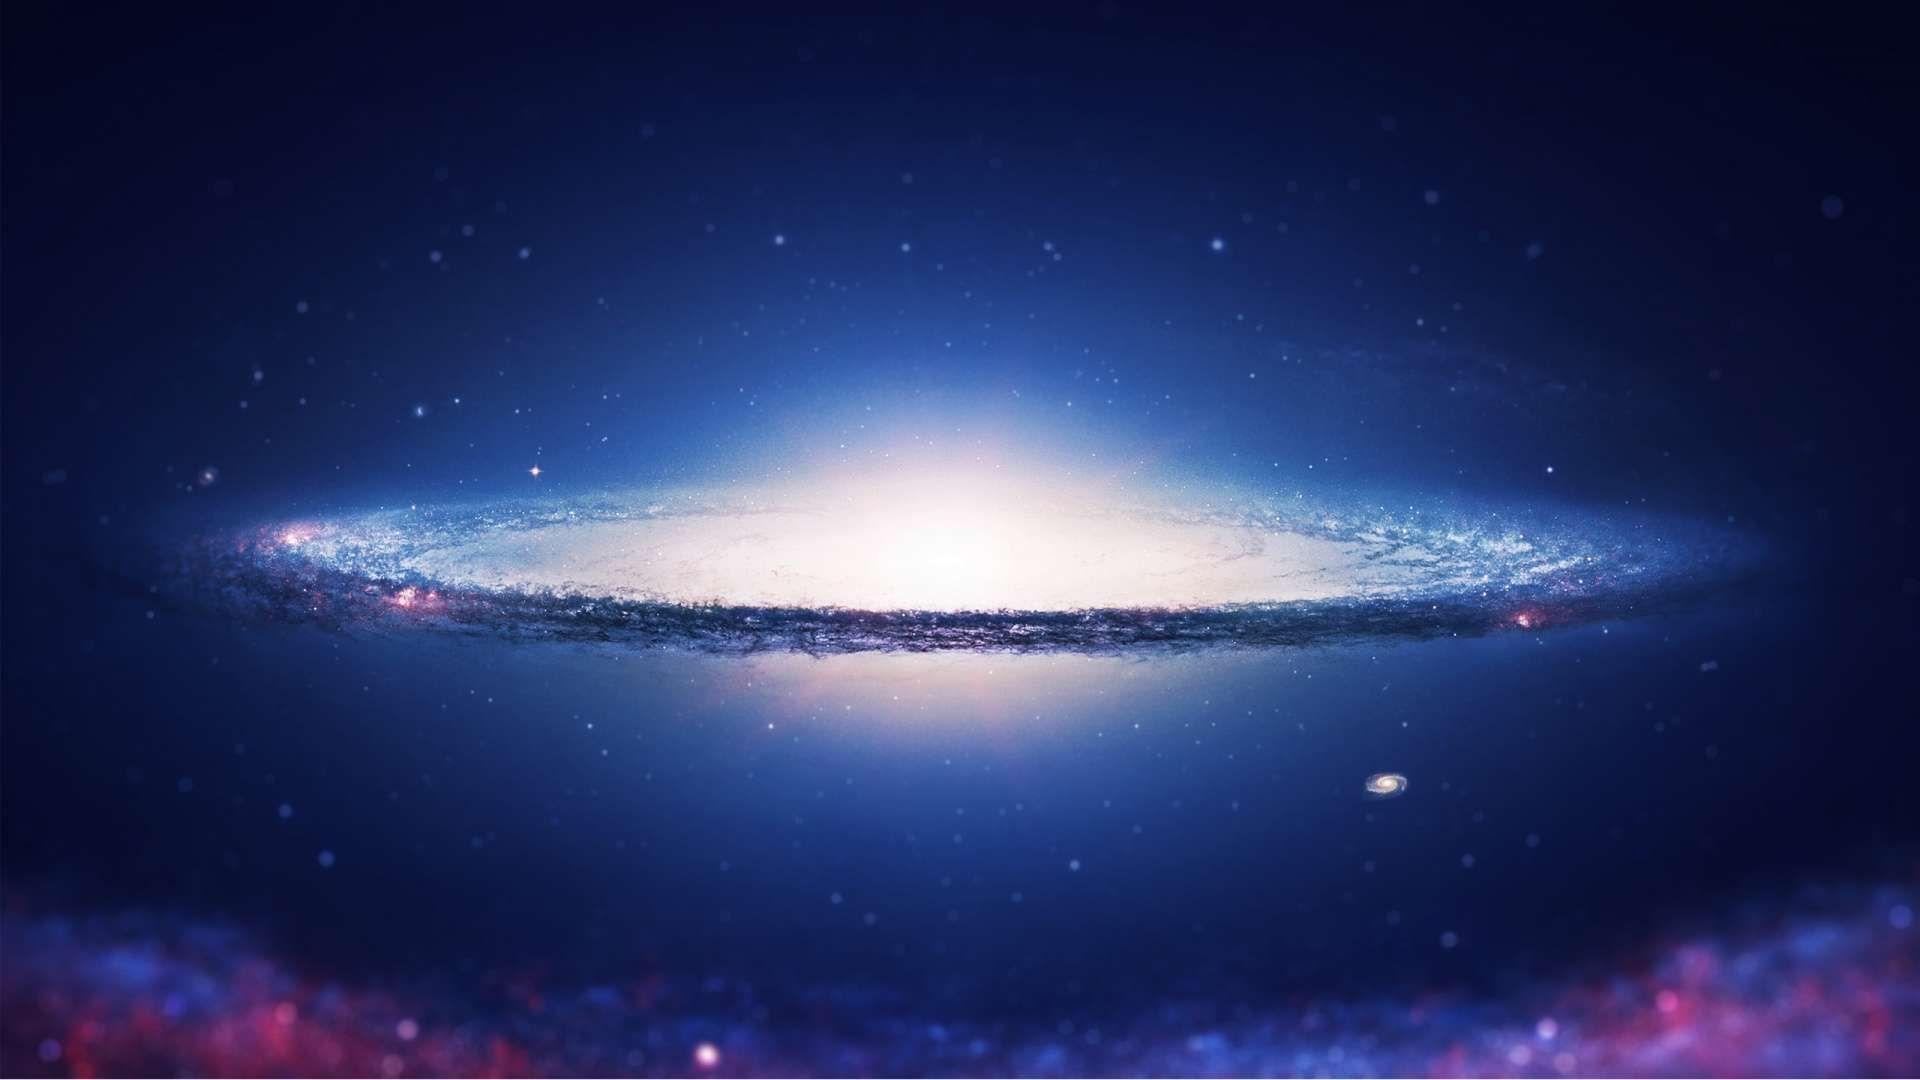 Spiral Galaxy HD Wallpaper 1080p. Die Natur macht nichts